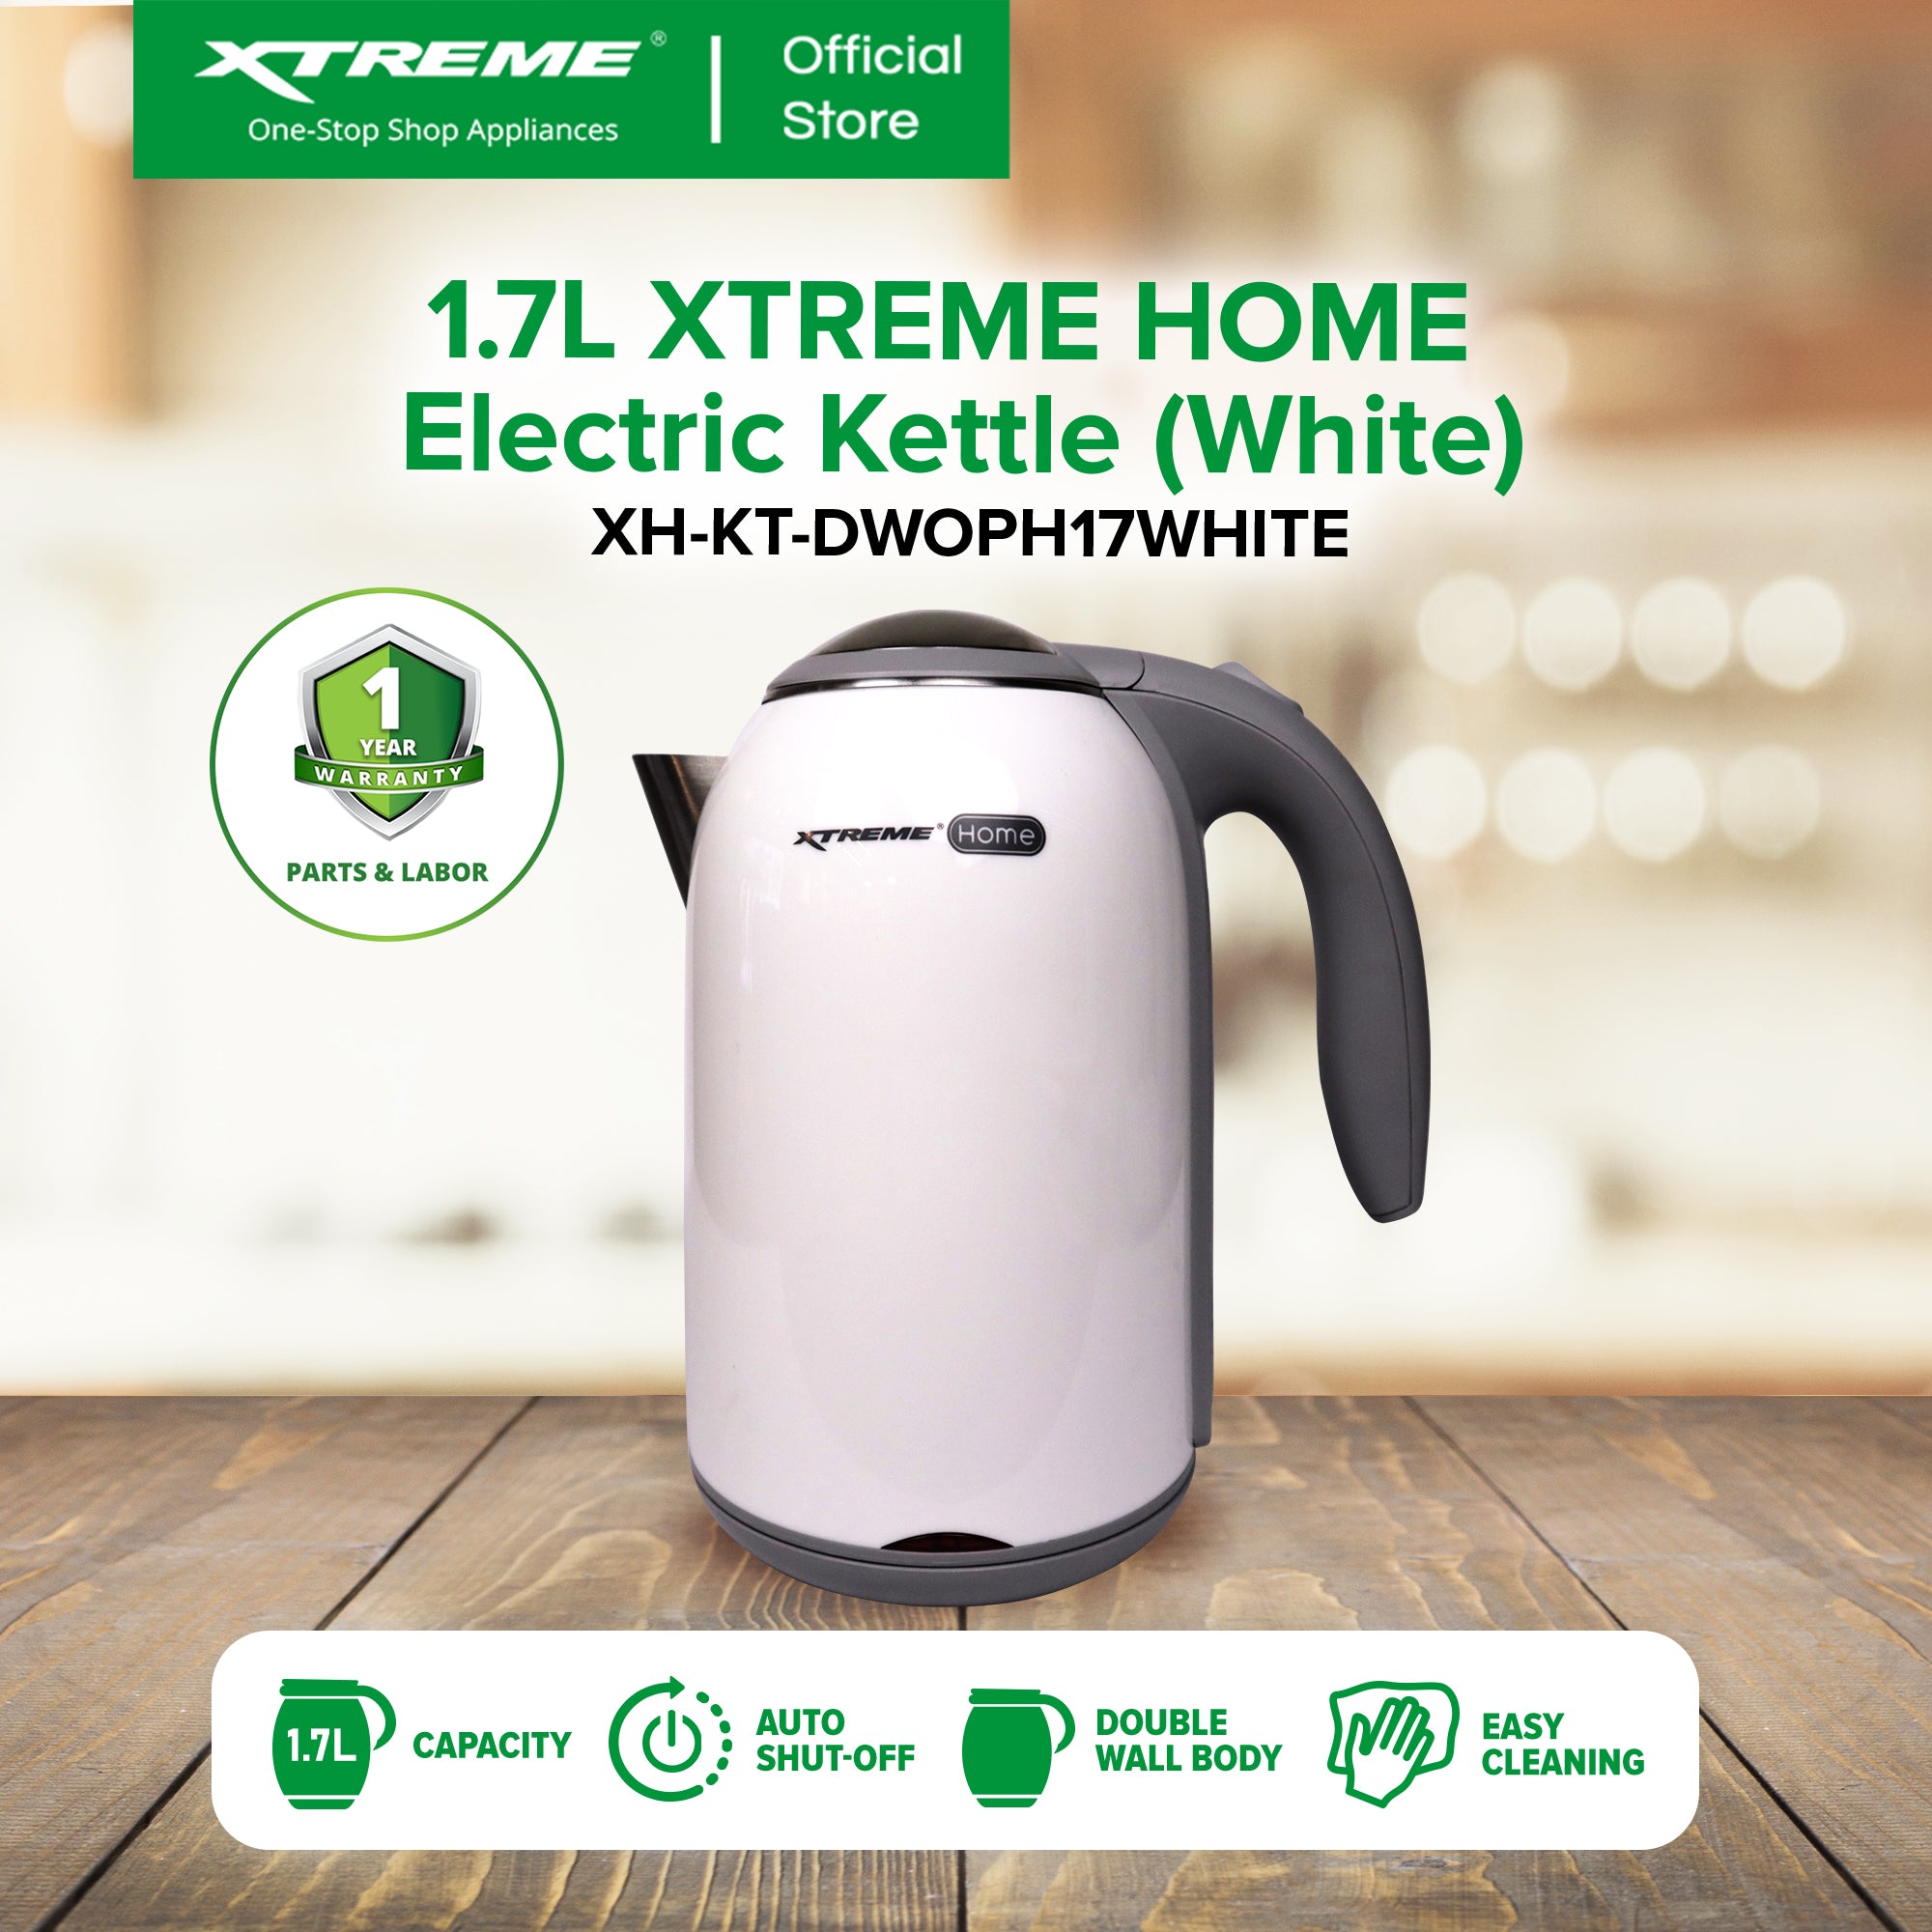 1.7L XTREME HOME Electric Kettle (White) | XH-KT-DWOPH17WHITE